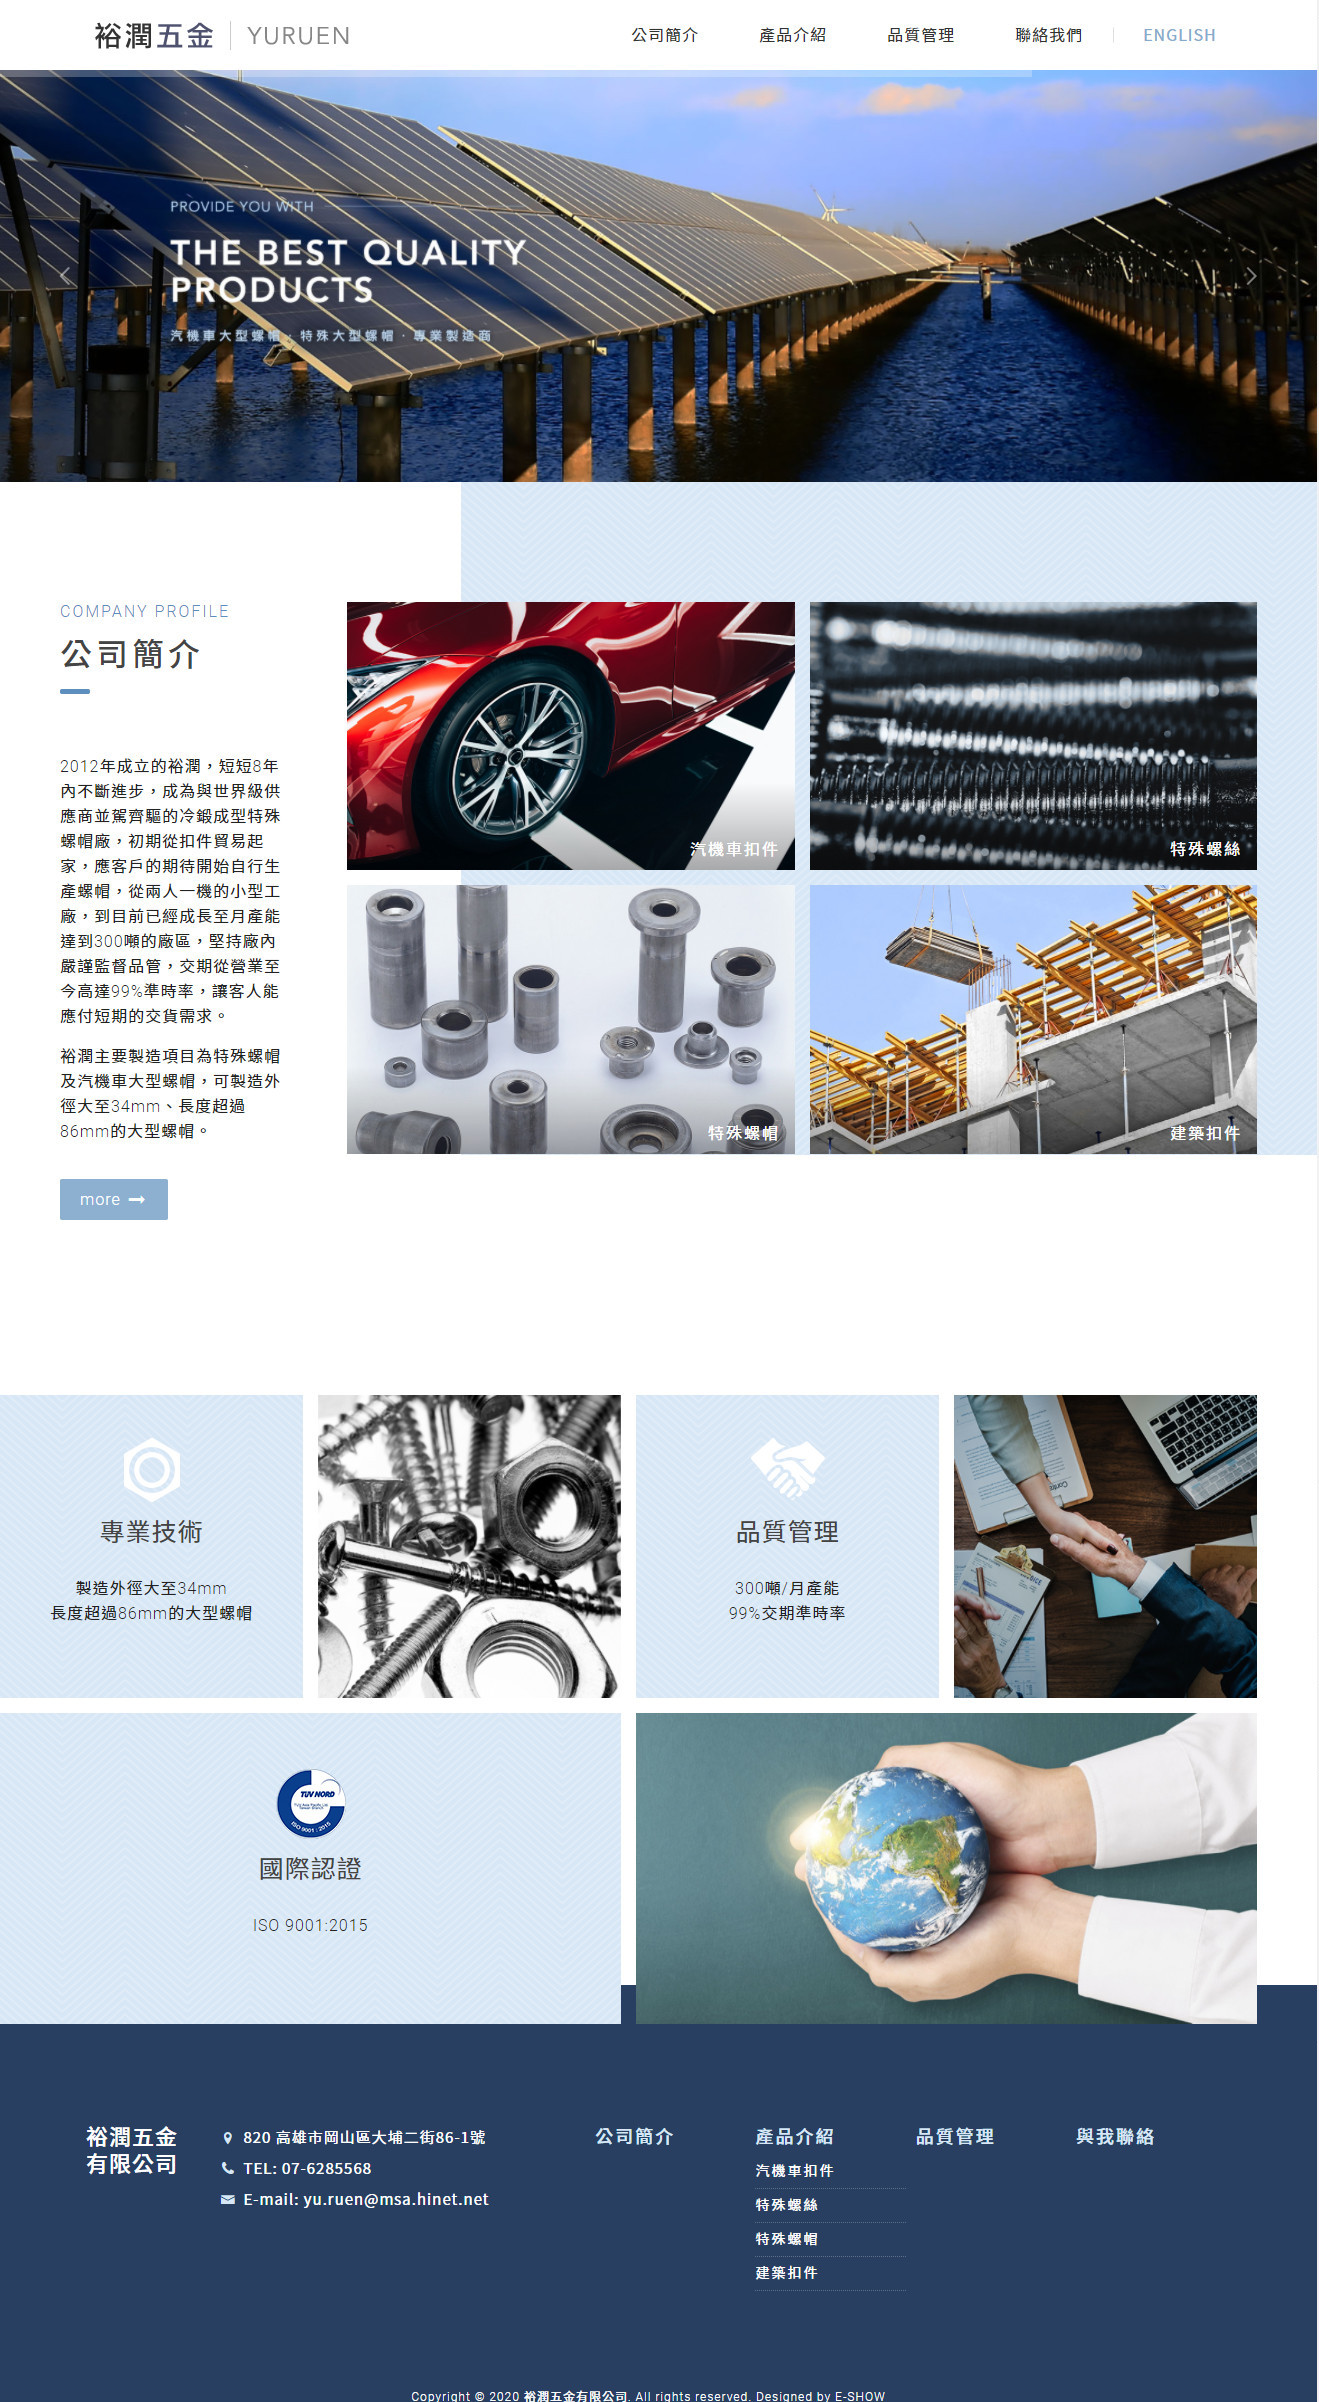 裕潤五金有限公司 RWD響應式企業網站設計
網站設計